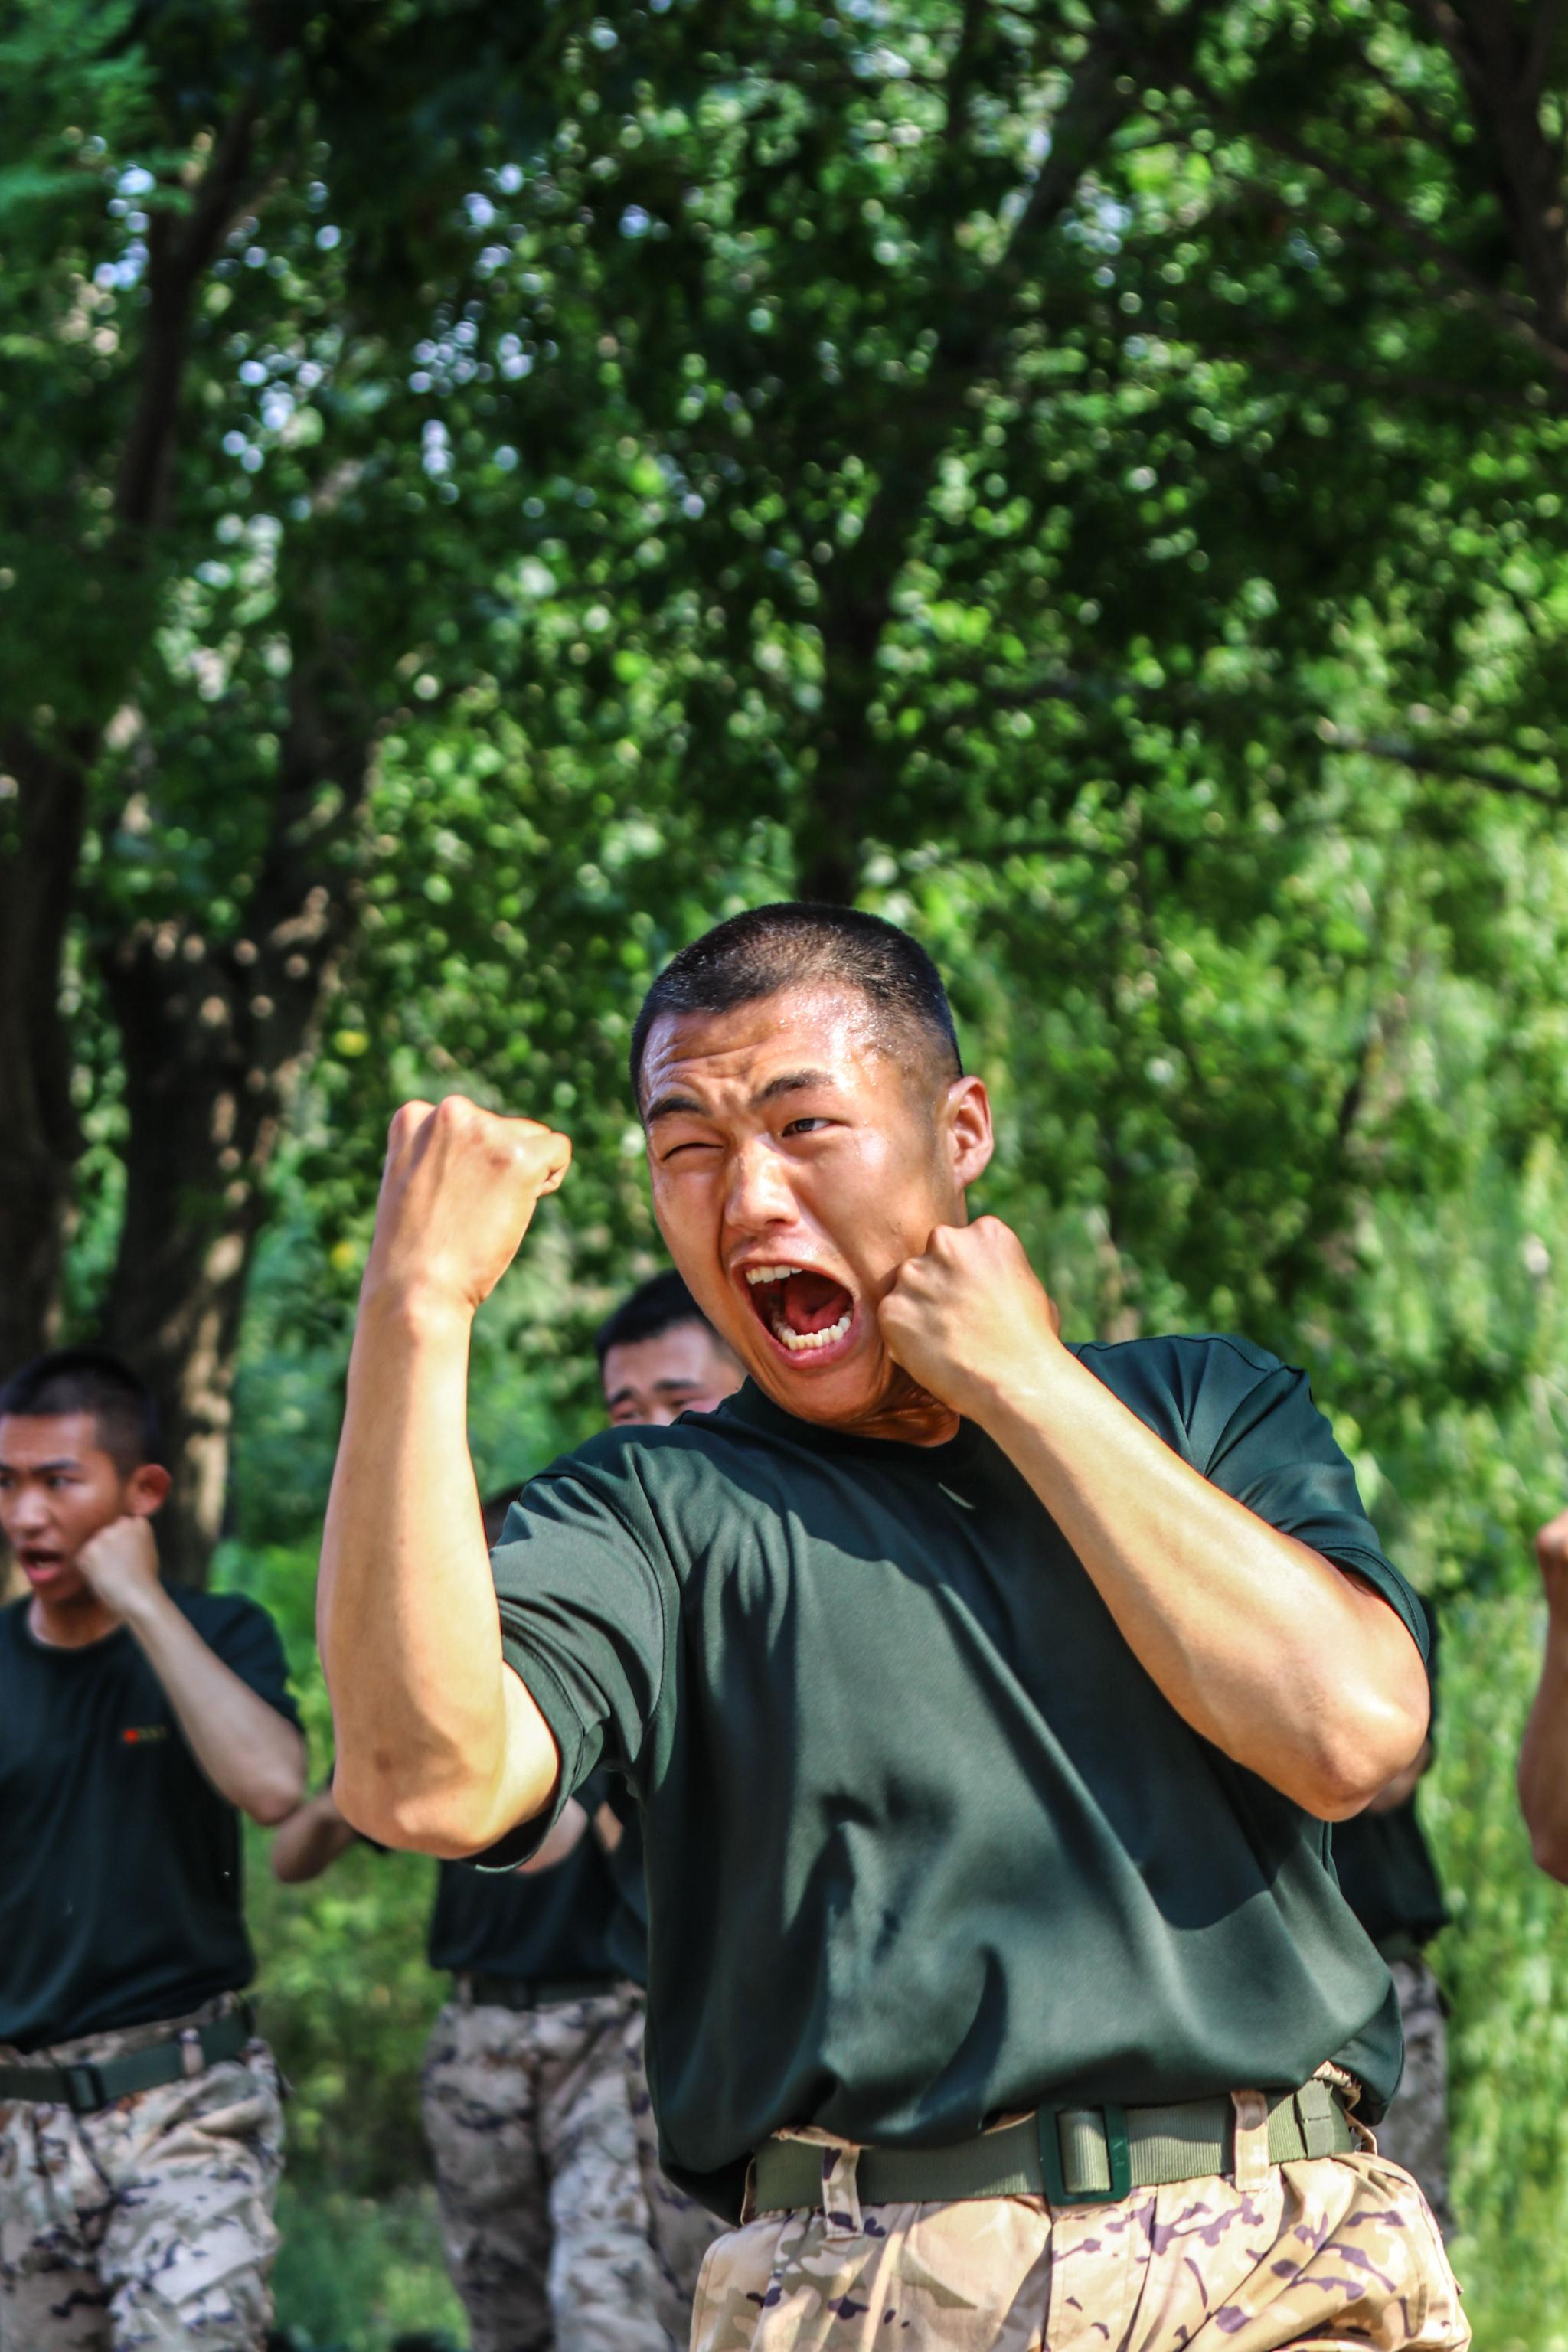 武警北京总队二师金剑图片